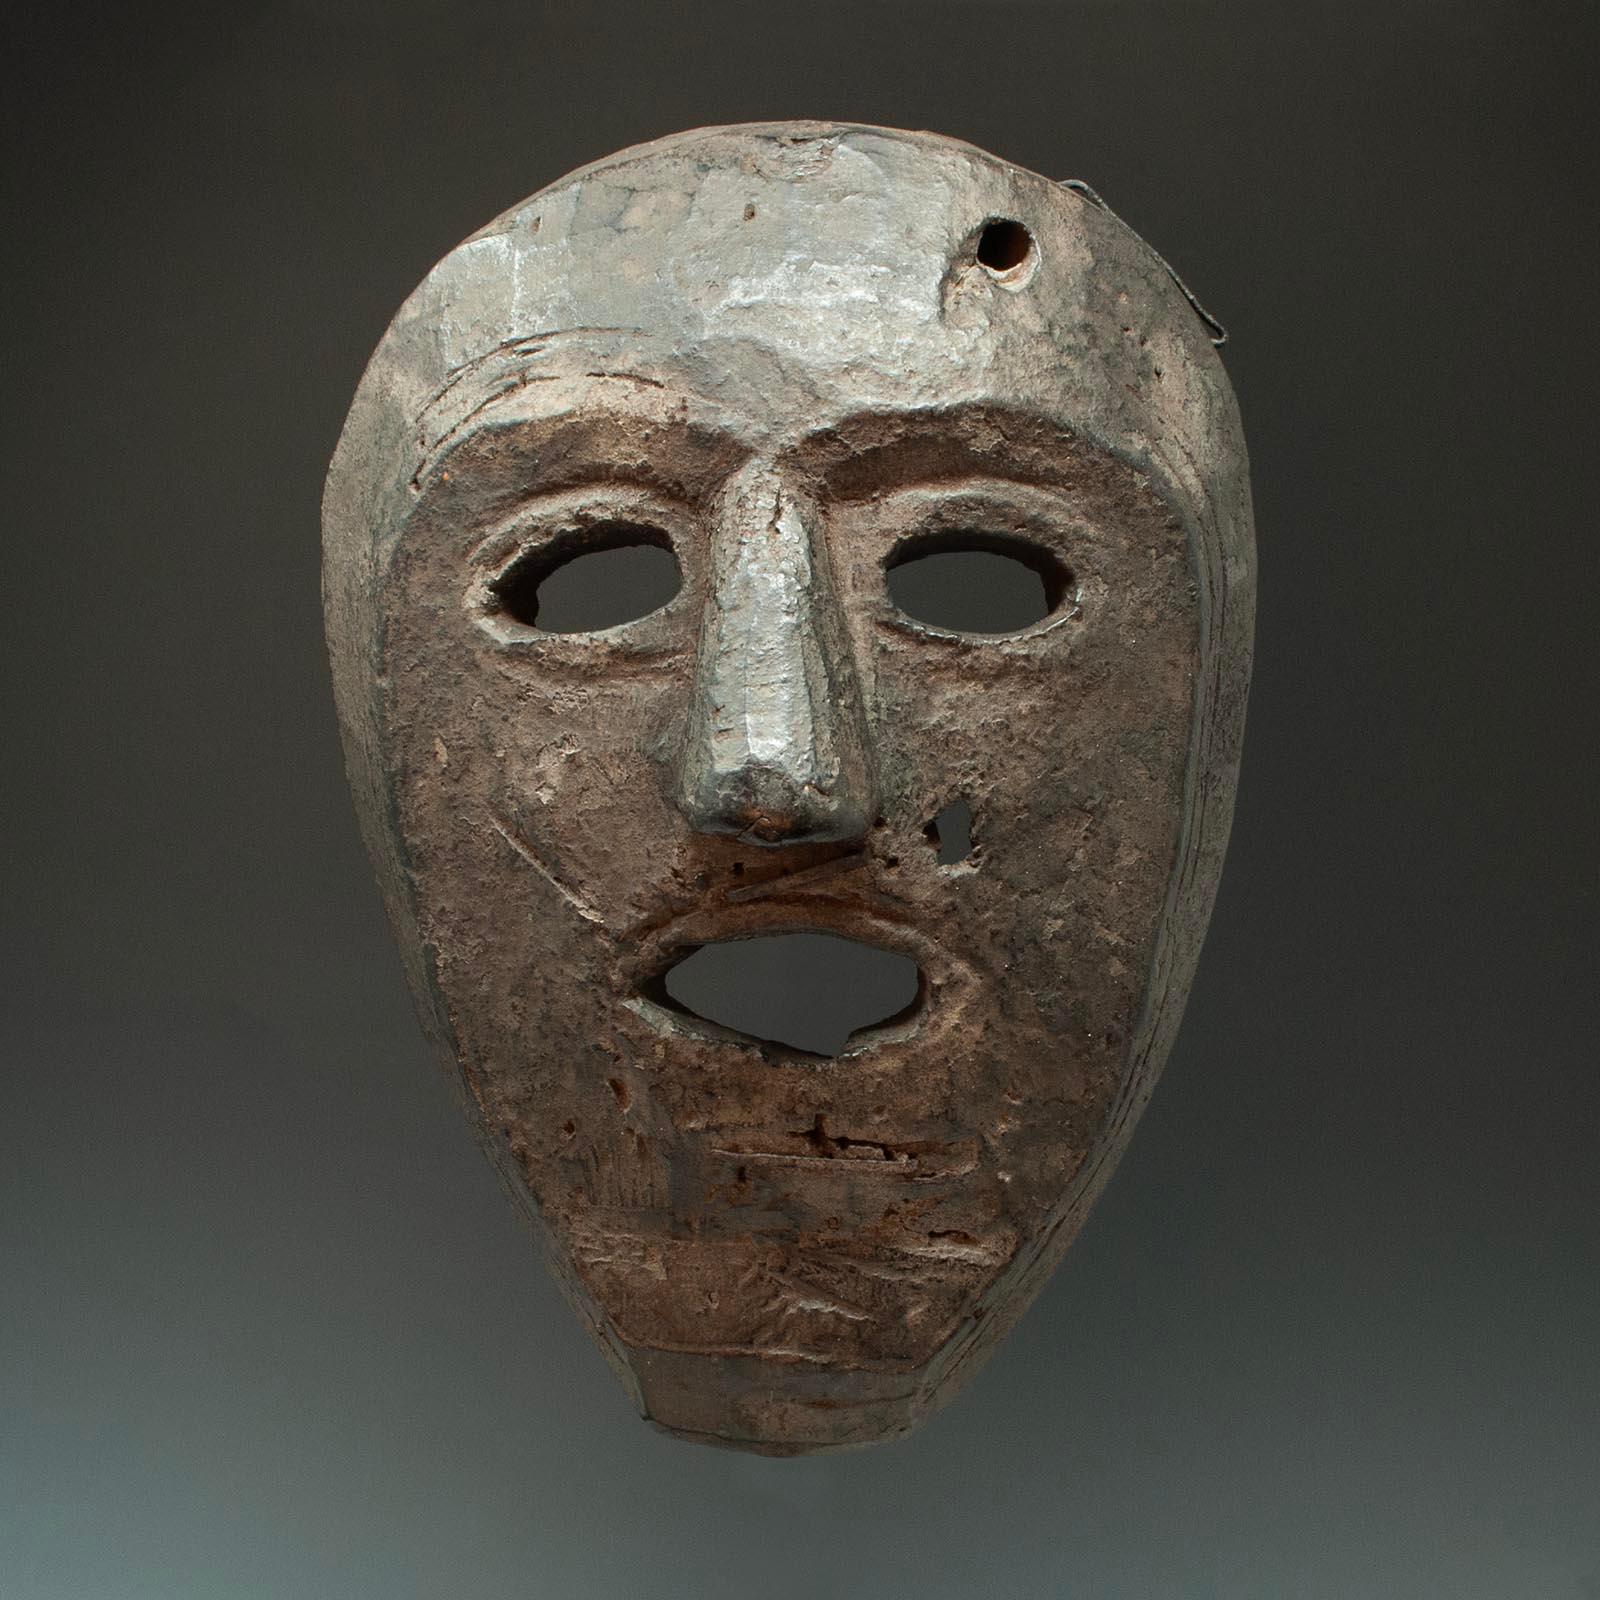 Stammesmaske, spätes 19. - frühes 20. Jahrhundert, Westnepal

Eine Maske aus West-Nepal mit einer eher herzförmigen Gesichtsfläche. Es gibt drei große eiserne Klammern, von denen zwei möglicherweise Fell oder Haare befestigt haben. Die Rückseite